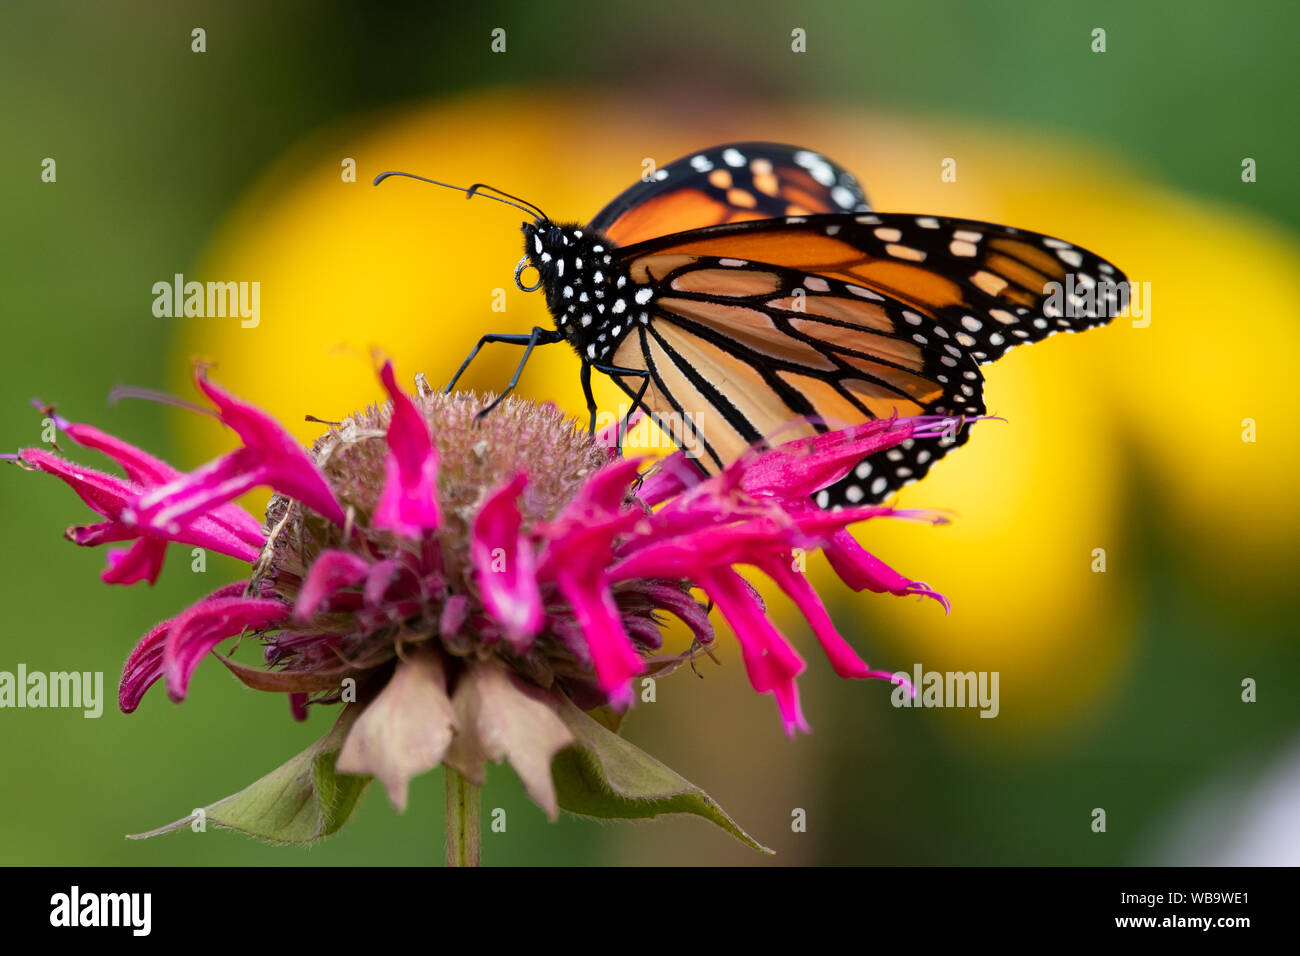 Una mariposa monarca, Danaus plexippus, alimentándose de una Monarda o bálsamo de abeja flor en un jardín en el especulador, NY ESTADOS UNIDOS Foto de stock